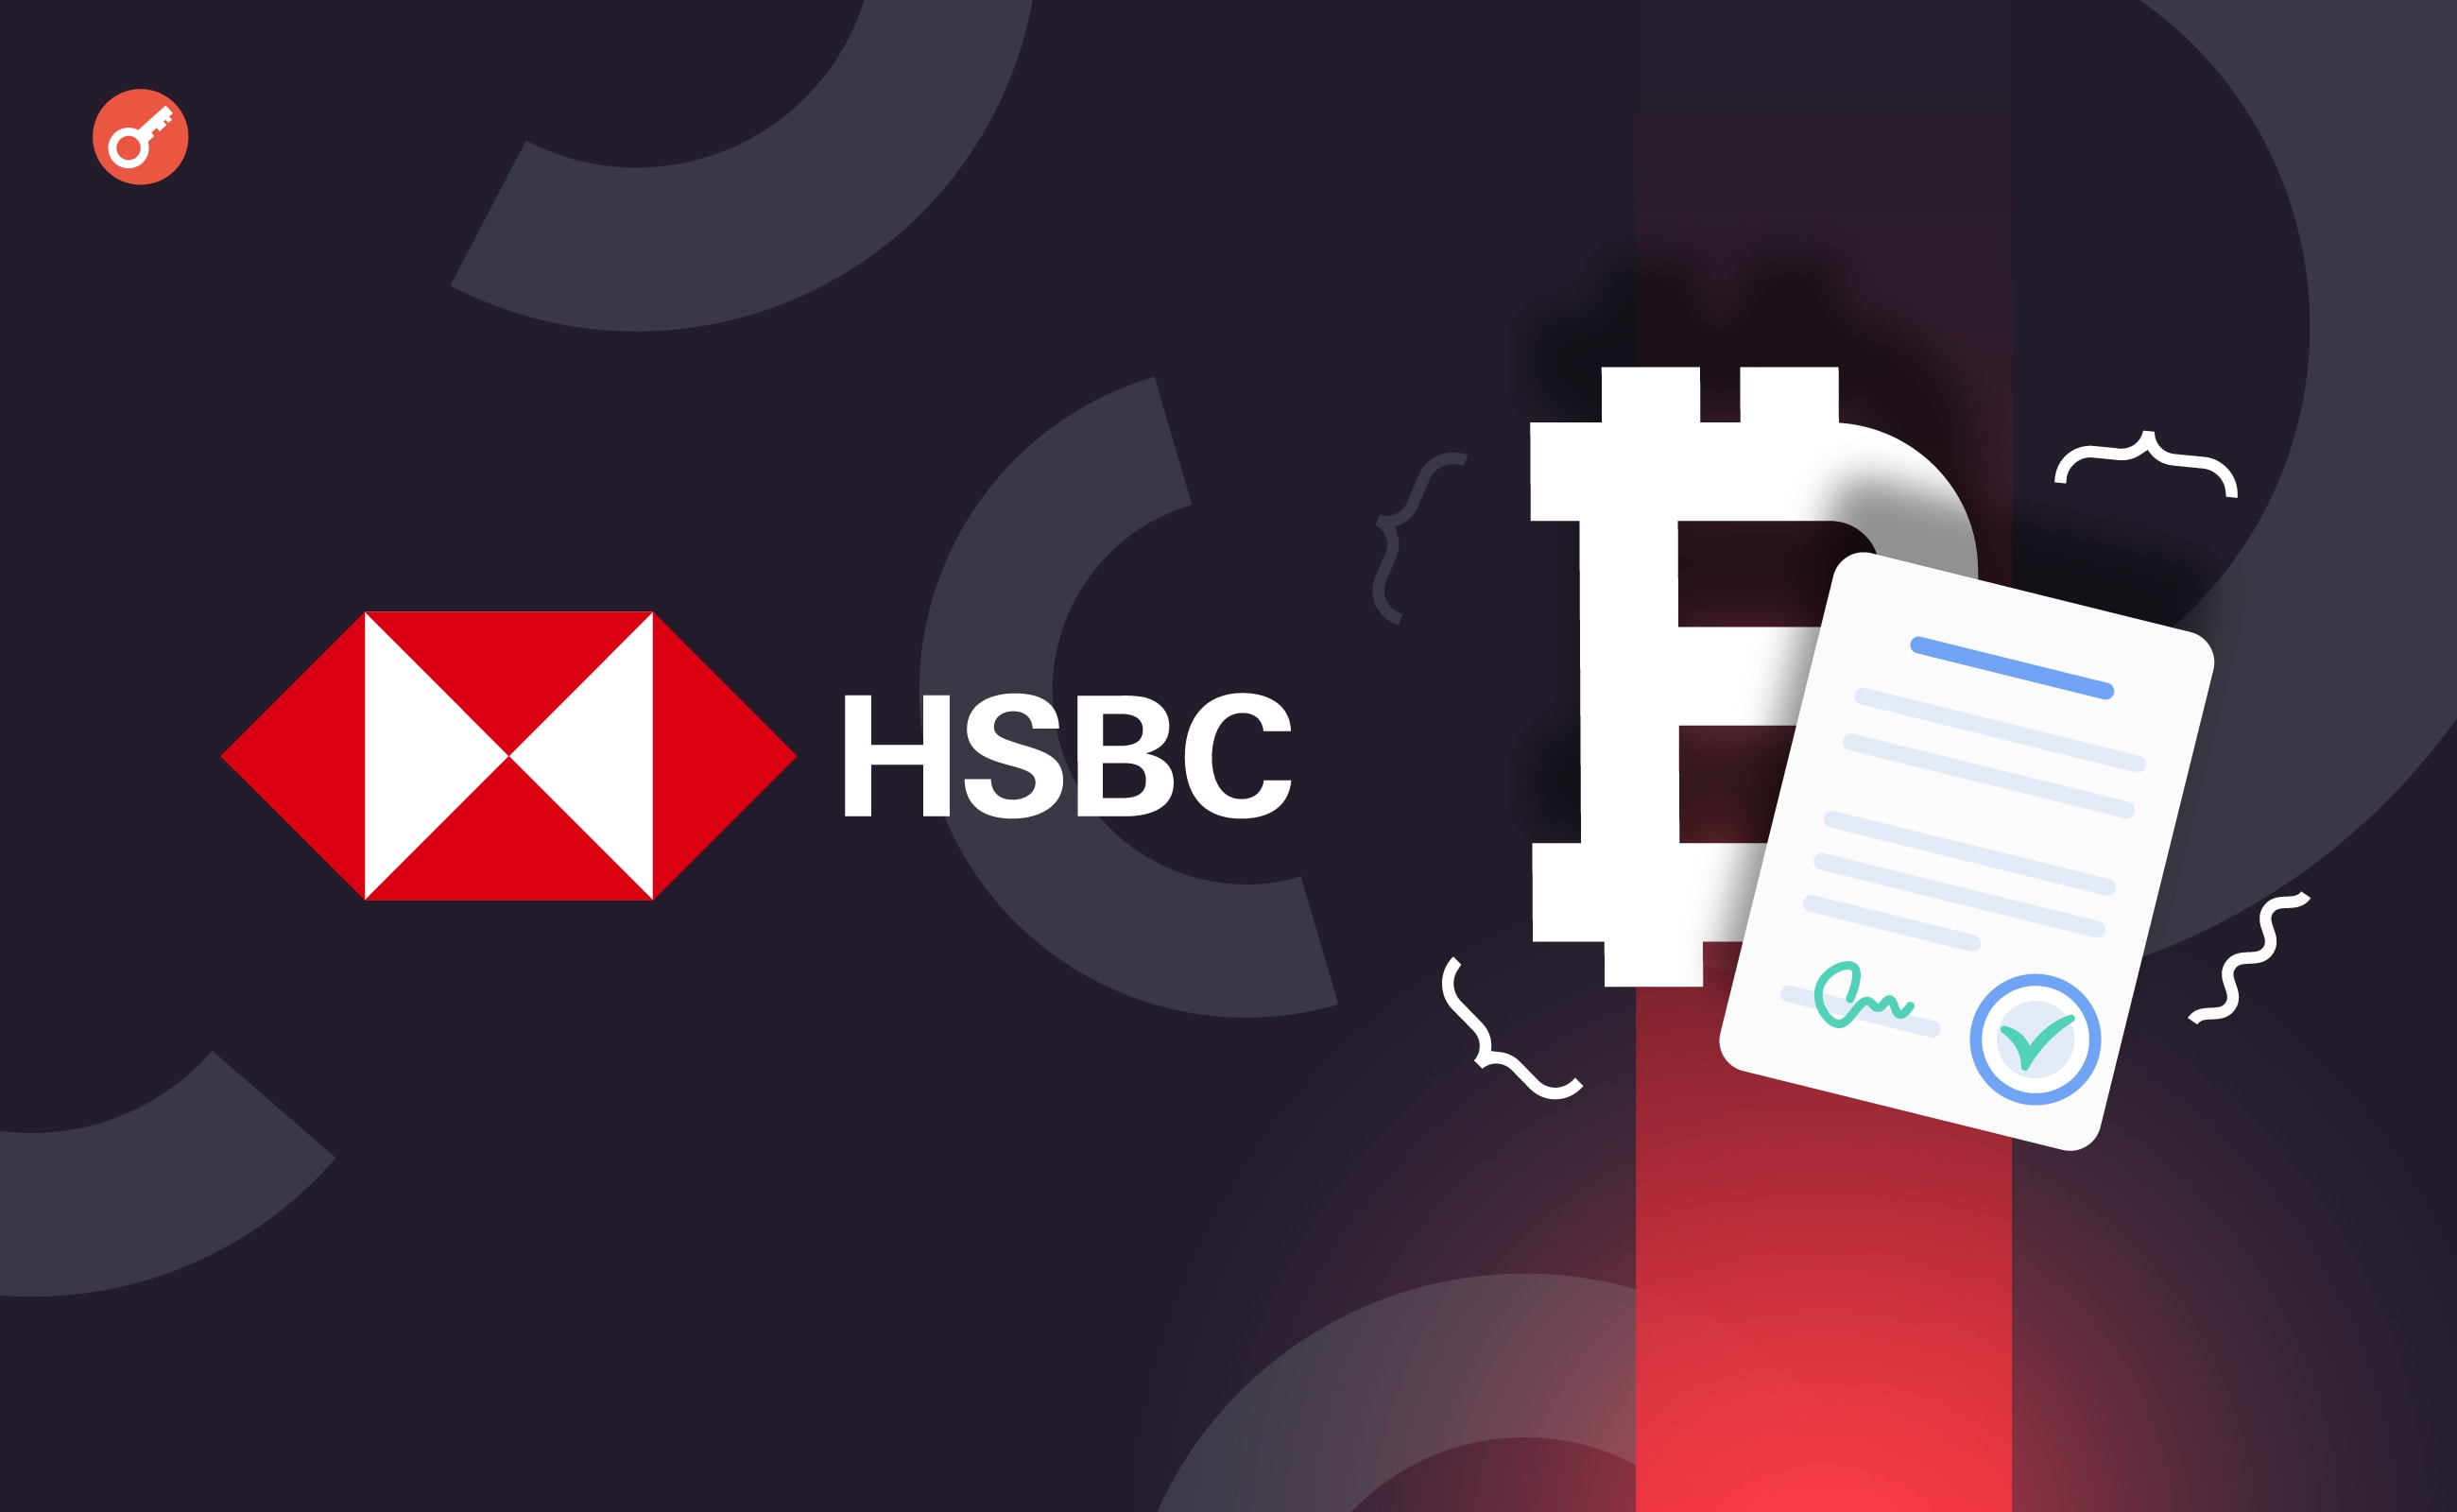 Банк HSBC добавил криптоплатежи для погашения кредитов и ипотеки. Заглавный коллаж новости.